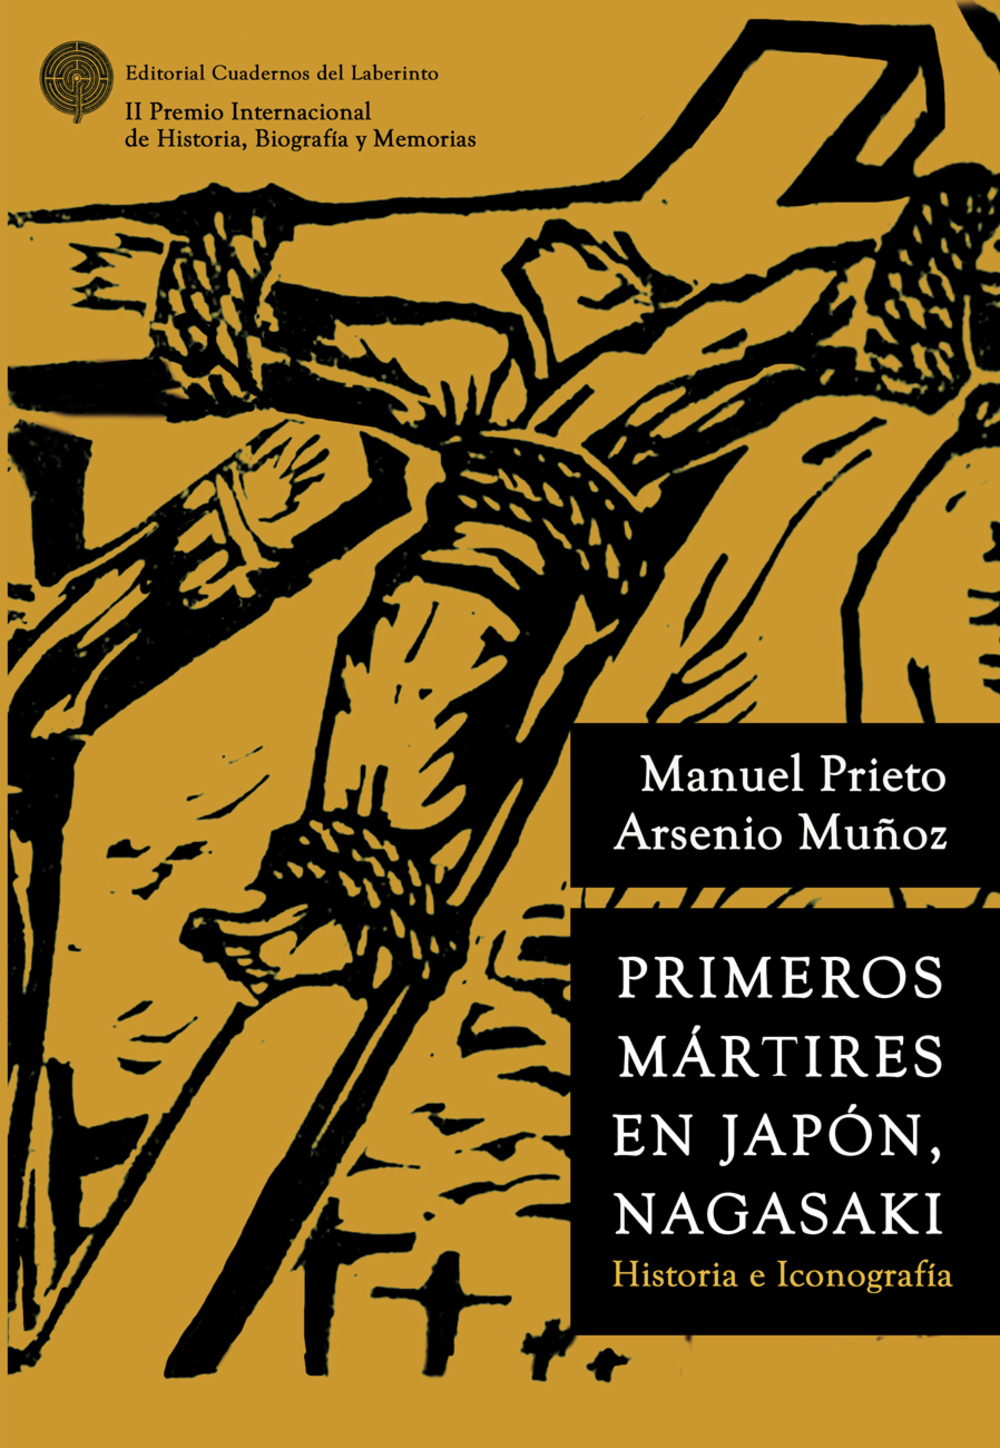 El abulense Arsenio Muñoz, Premio Internacional de Historia